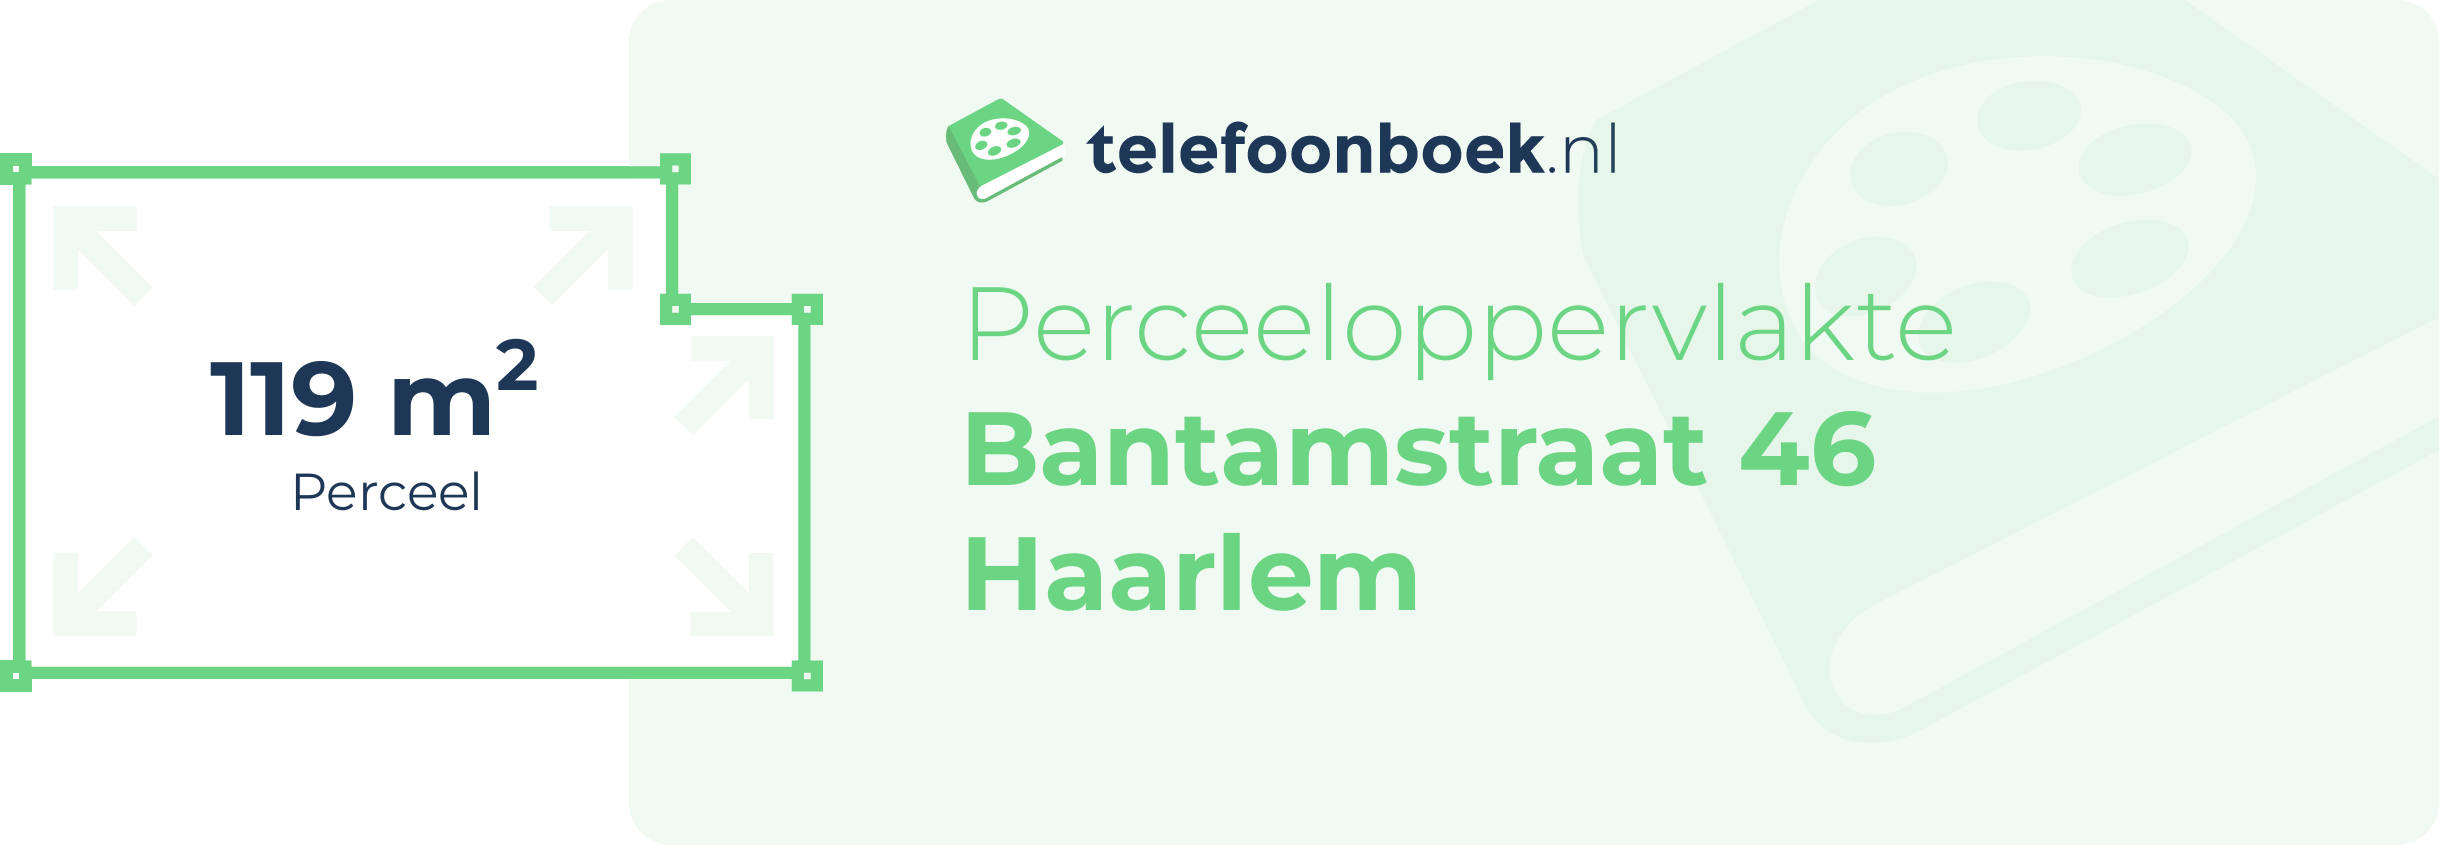 Perceeloppervlakte Bantamstraat 46 Haarlem